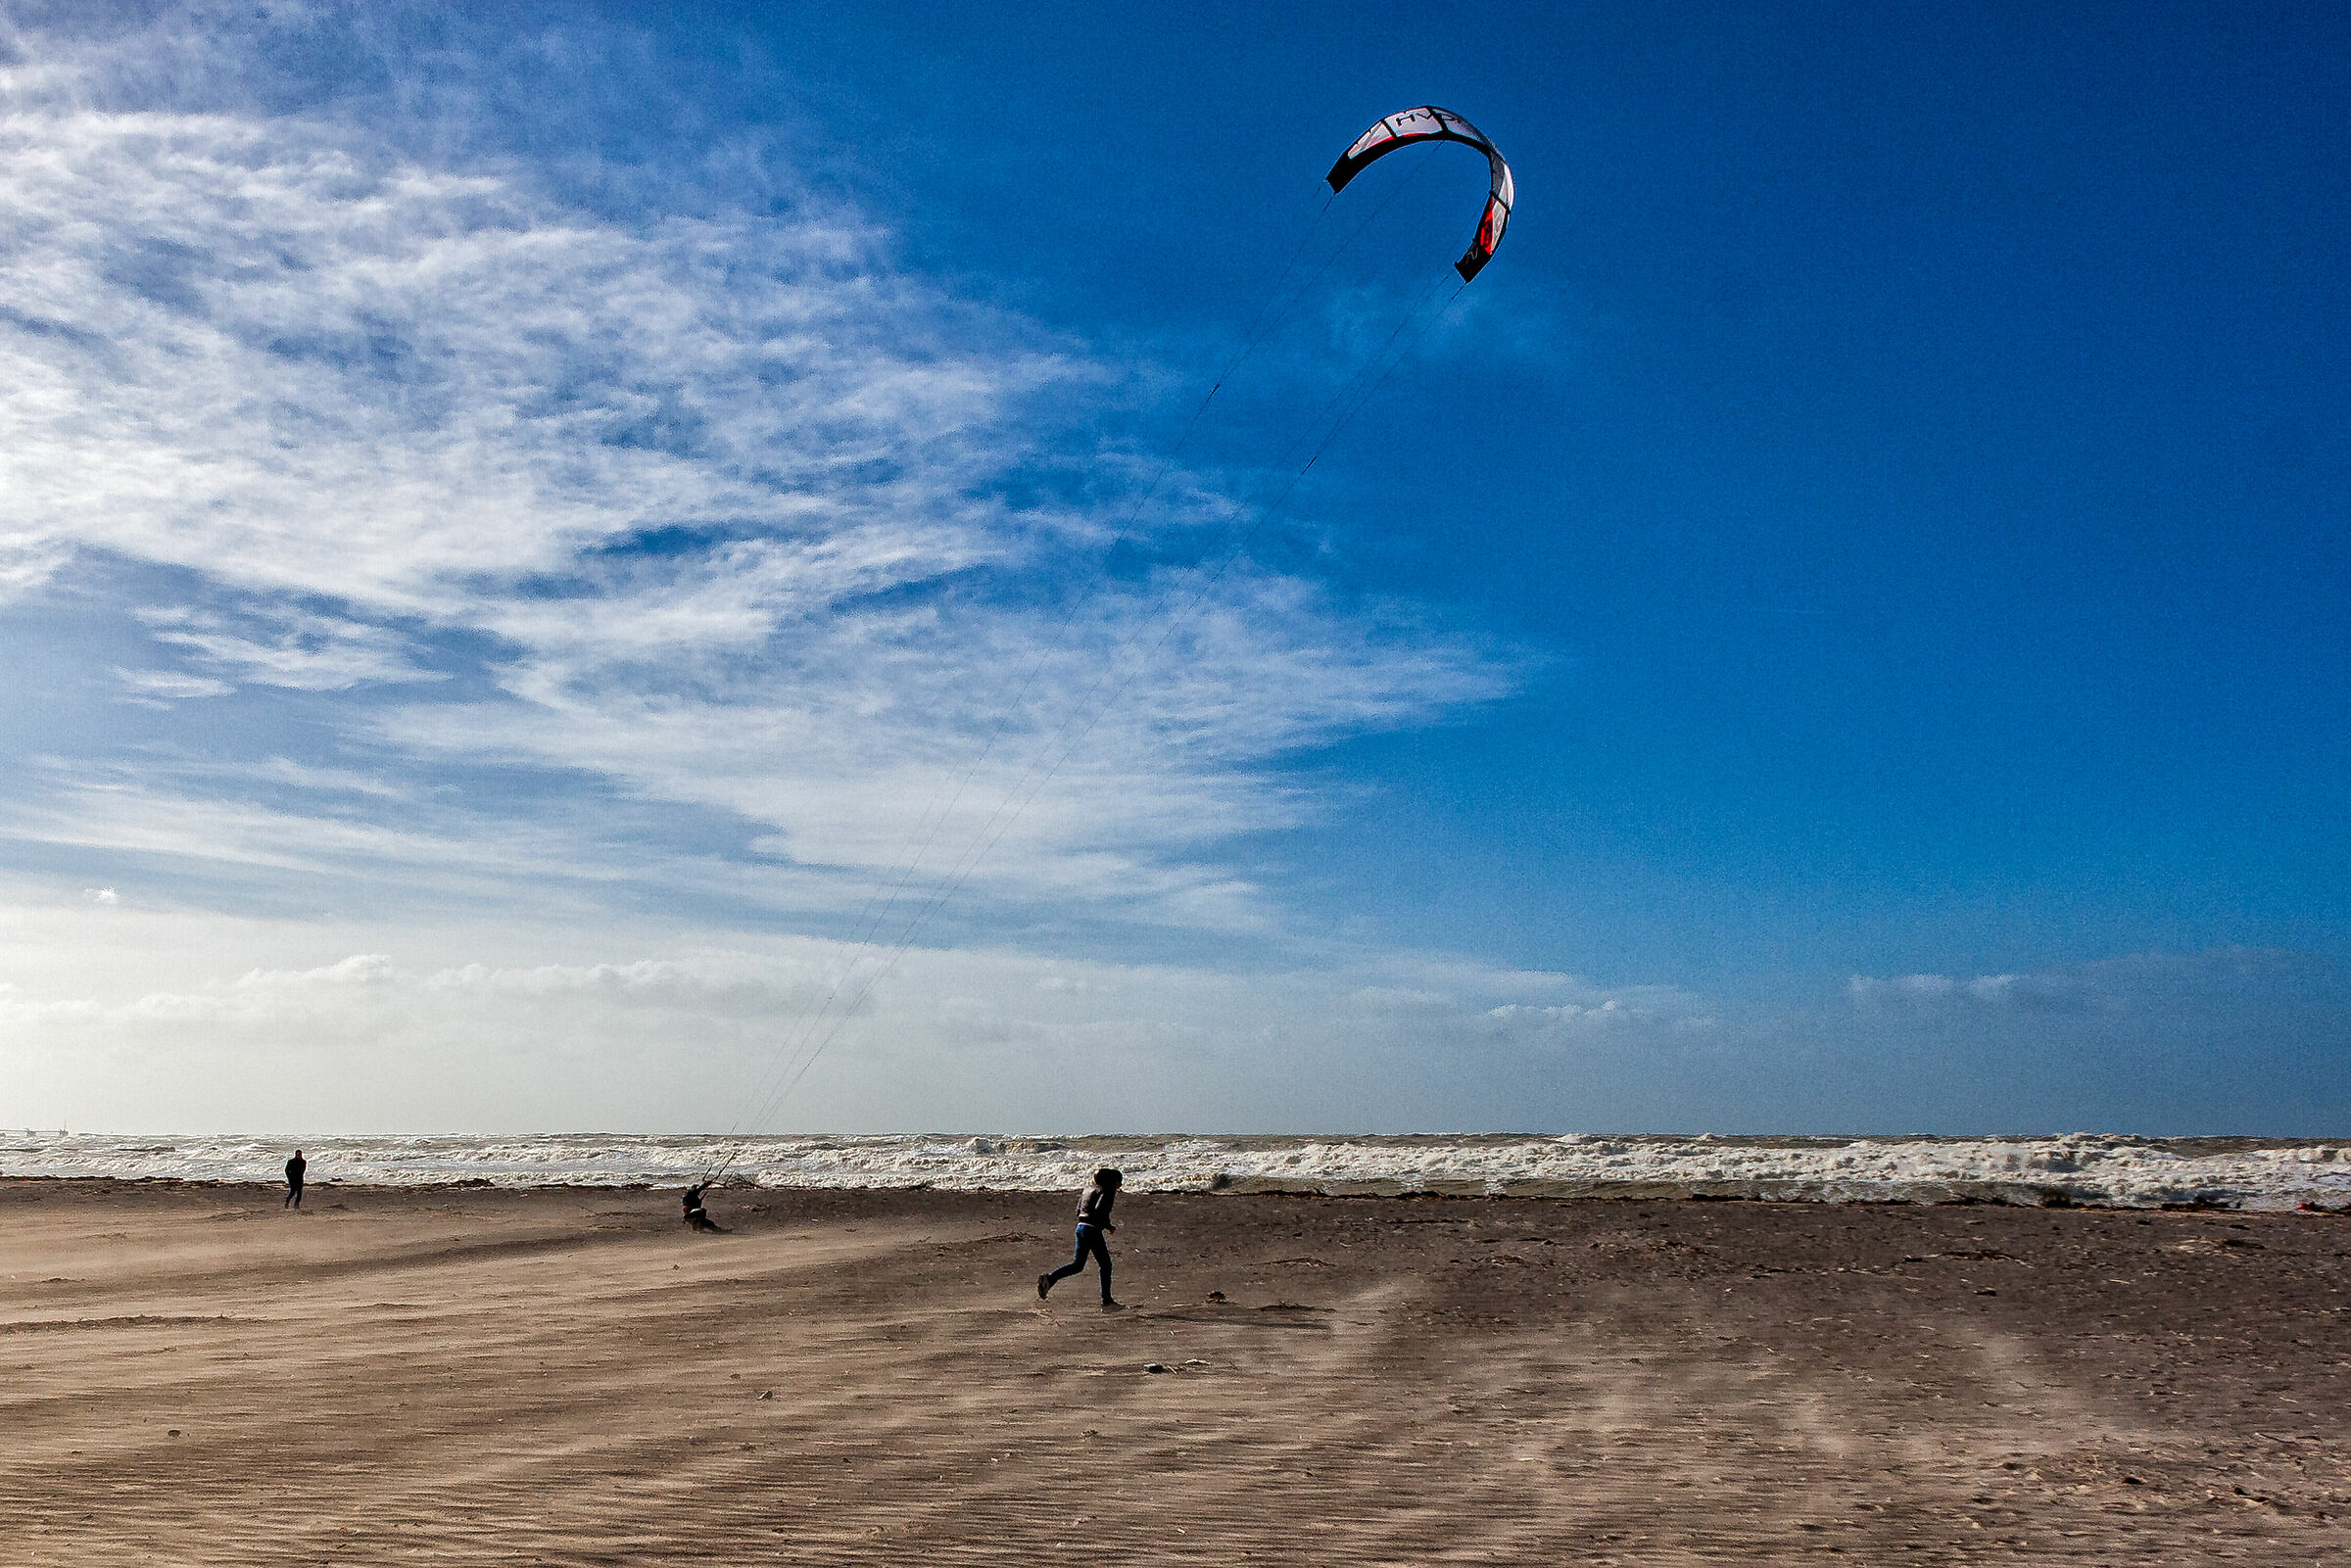  kite surfing...